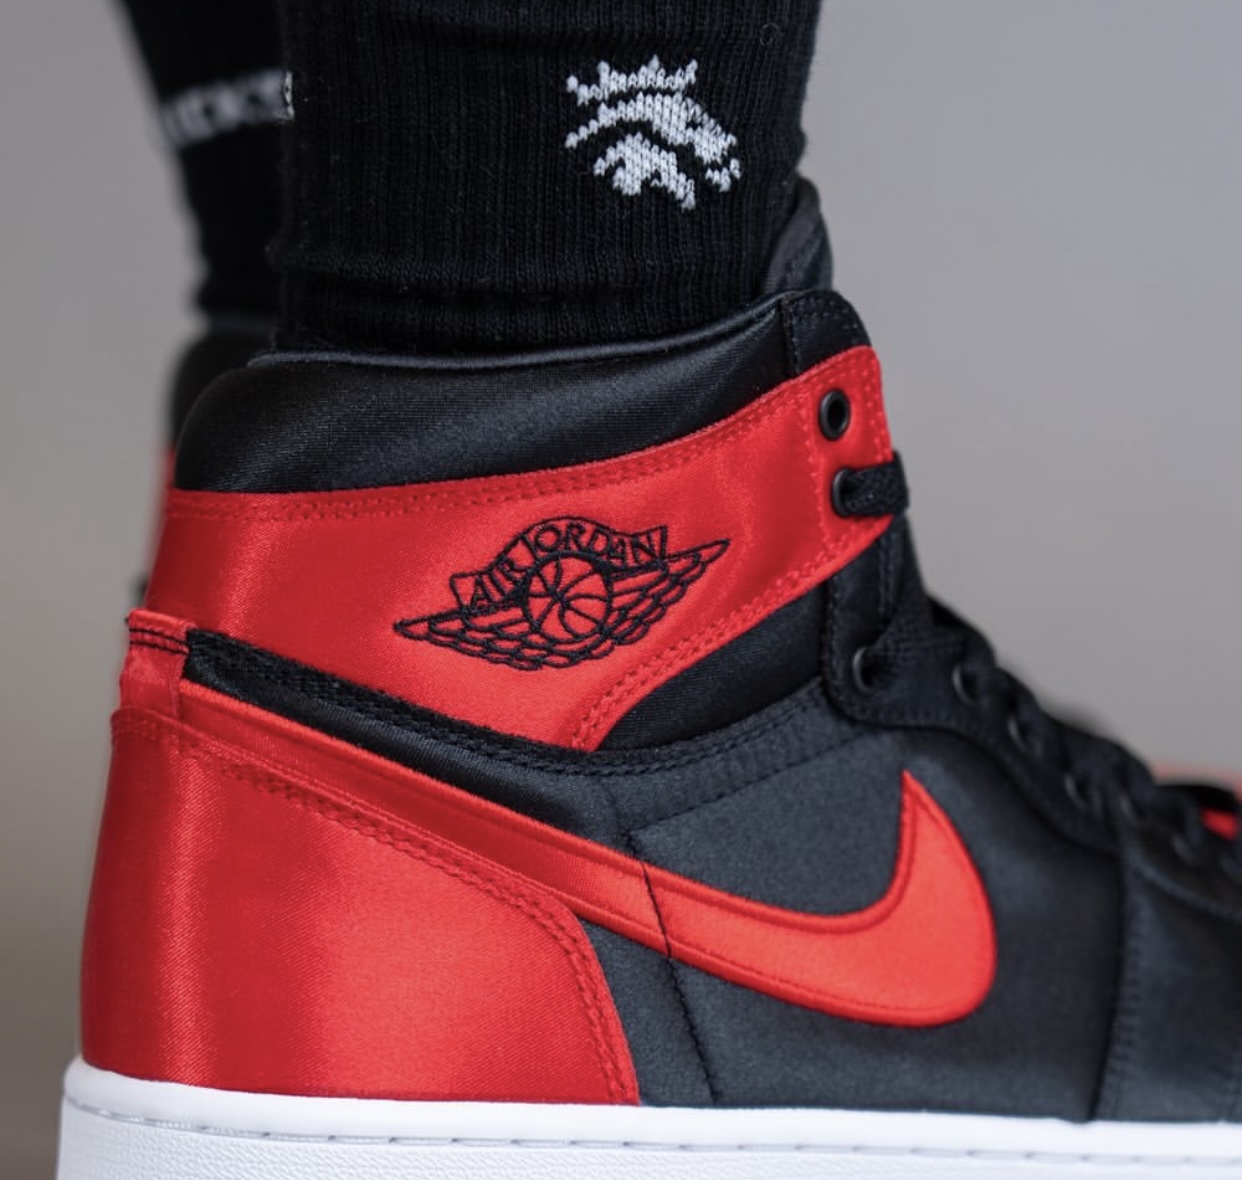 Sneaker Release : Womens Air Jordan 1 Retro High OG “Satin